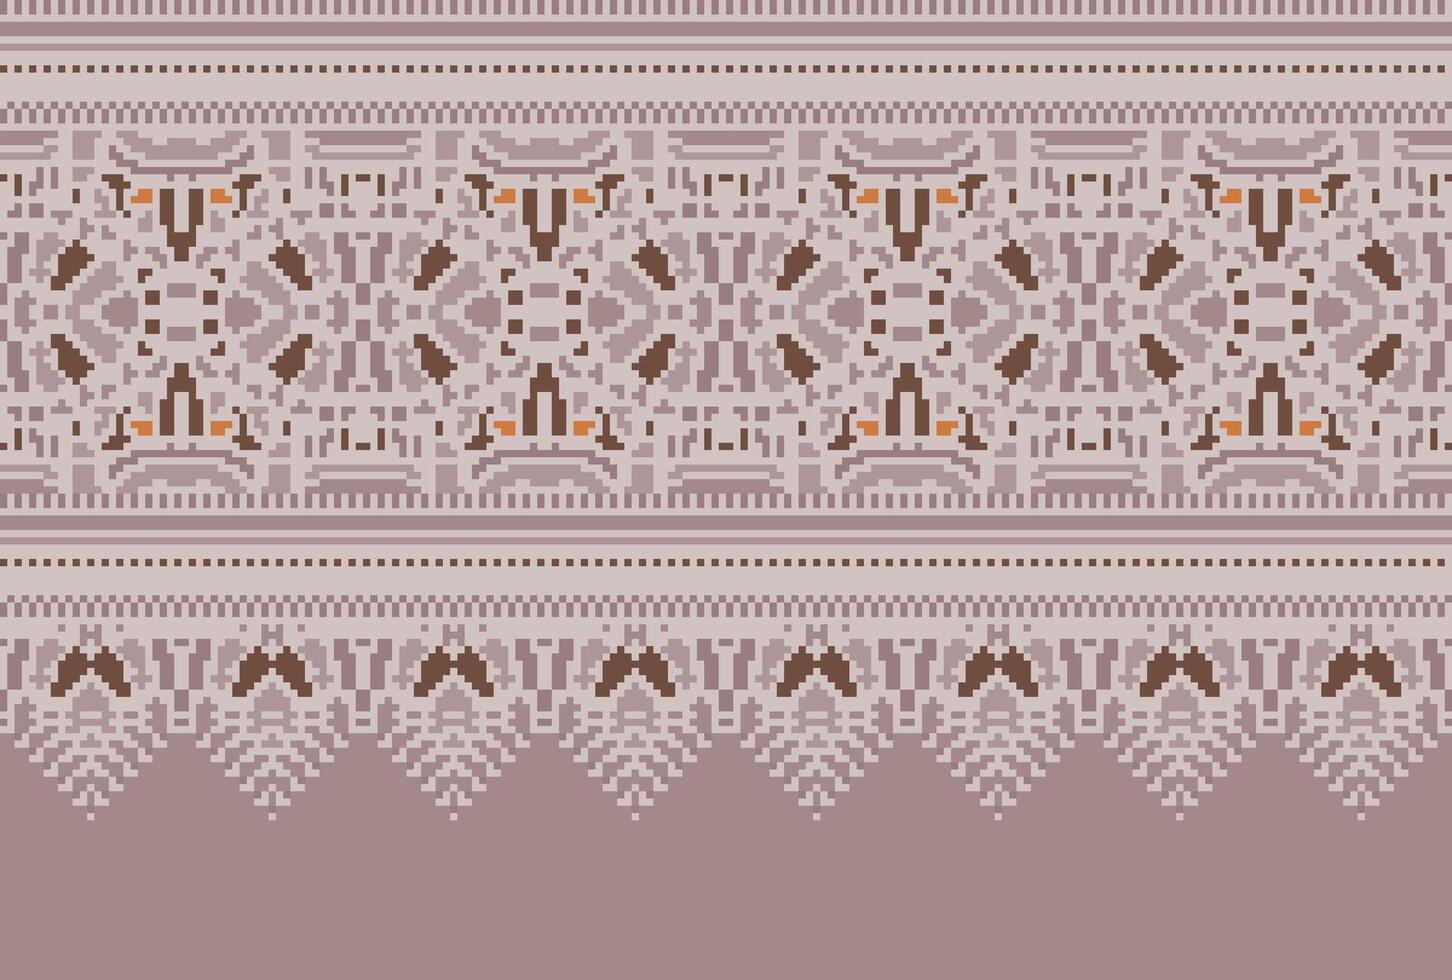 Cruz ponto tradicional étnico padronizar paisley flor ikat fundo abstrato asteca africano indonésio indiano desatado padronizar para tecido impressão pano vestir tapete cortinas e sarongue vetor